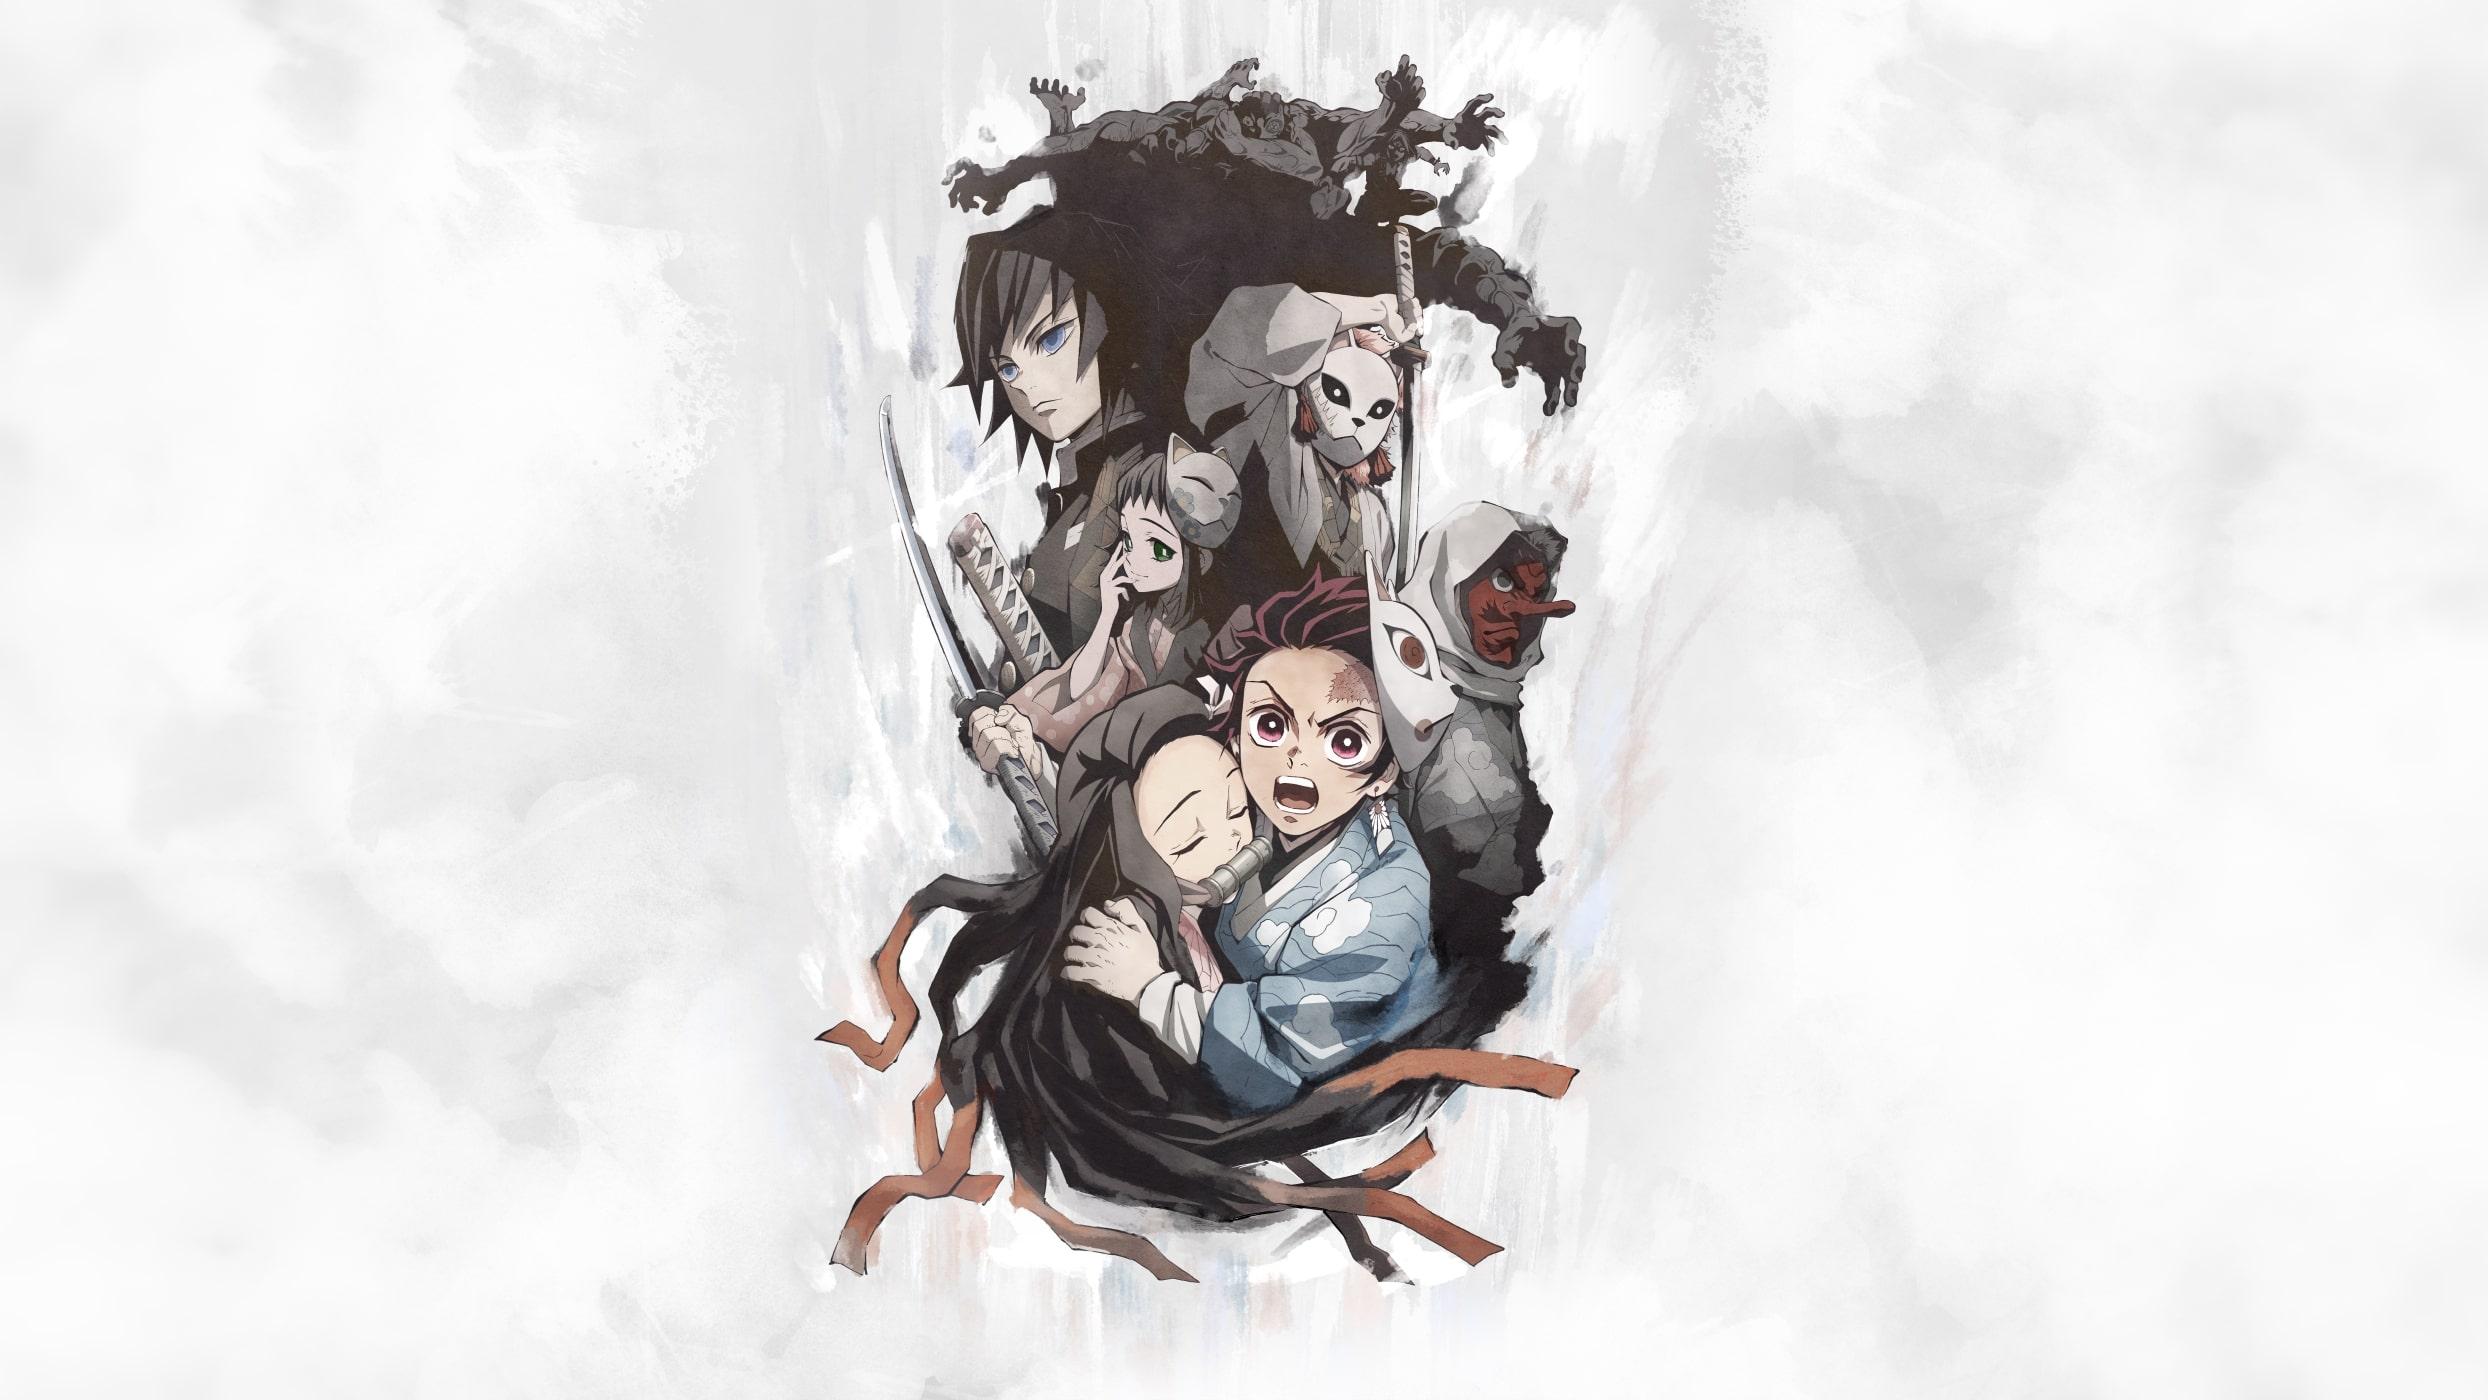 Wallpaper of Anime, Demon Slayer: Kimetsu no Yaiba